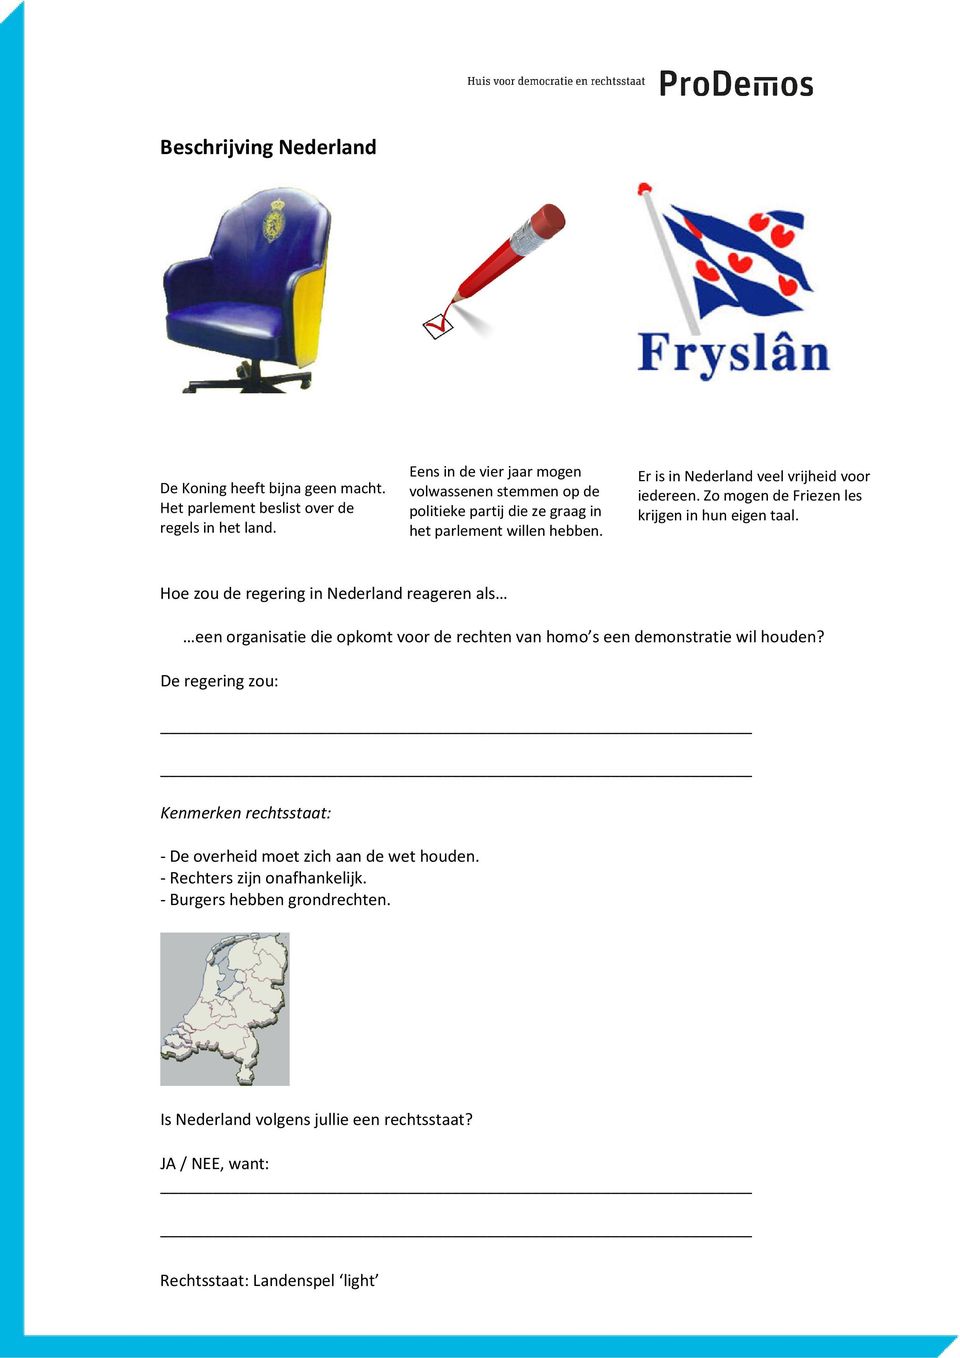 Er is in Nederland veel vrijheid voor iedereen. Zo mogen de Friezen les krijgen in hun eigen taal.